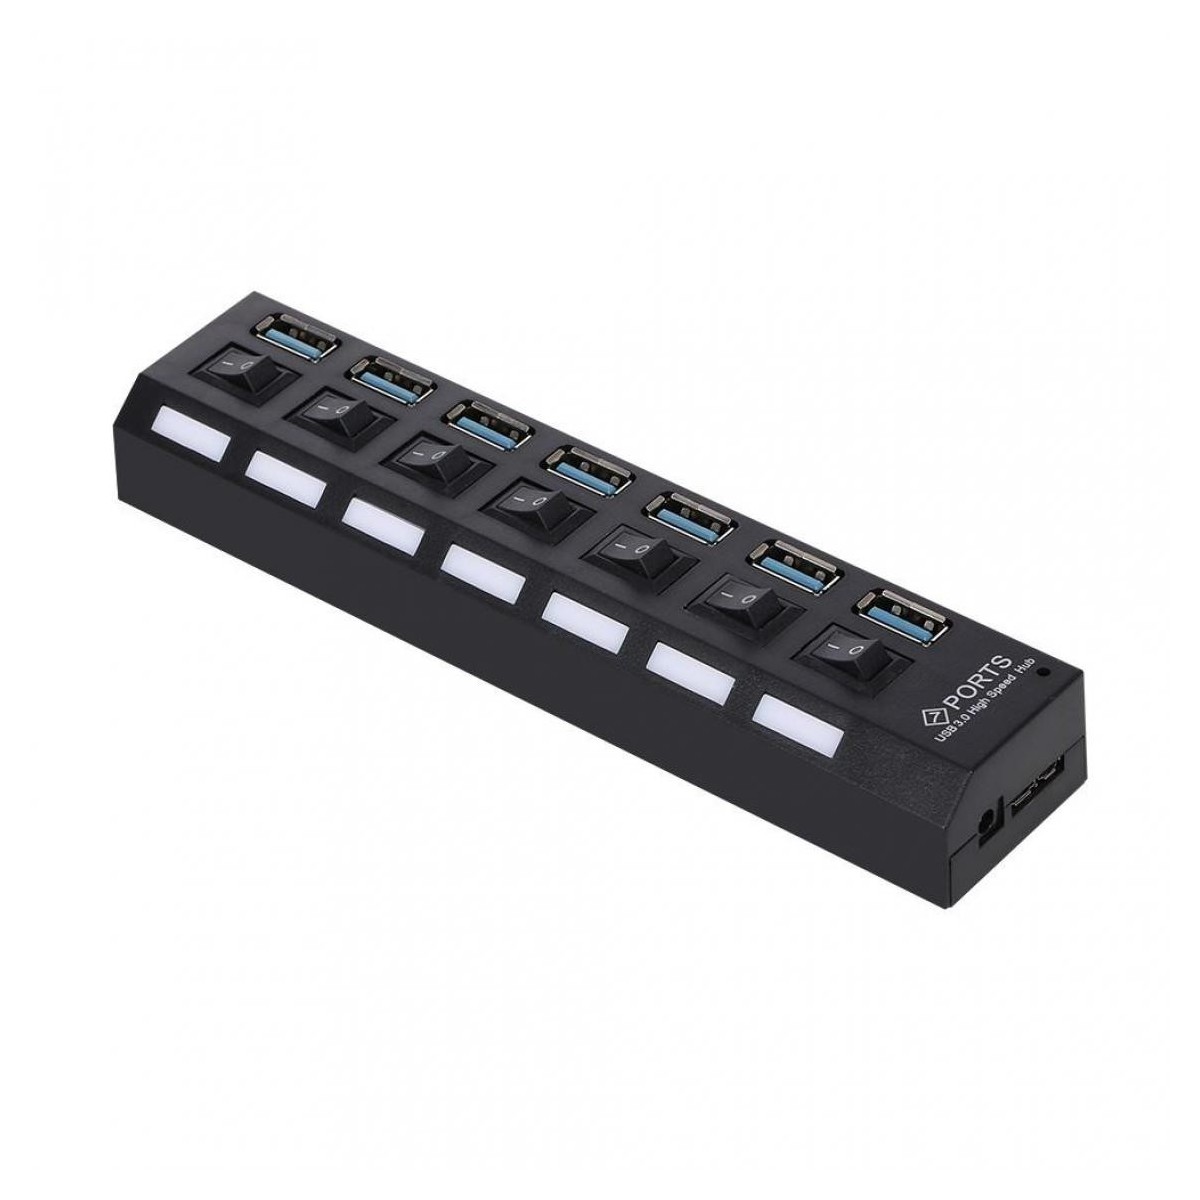 Hub Multiprise USB 3.0 avec 7 ports avec indicateur LED et interrupteurs individuels pour économiser l'énergie